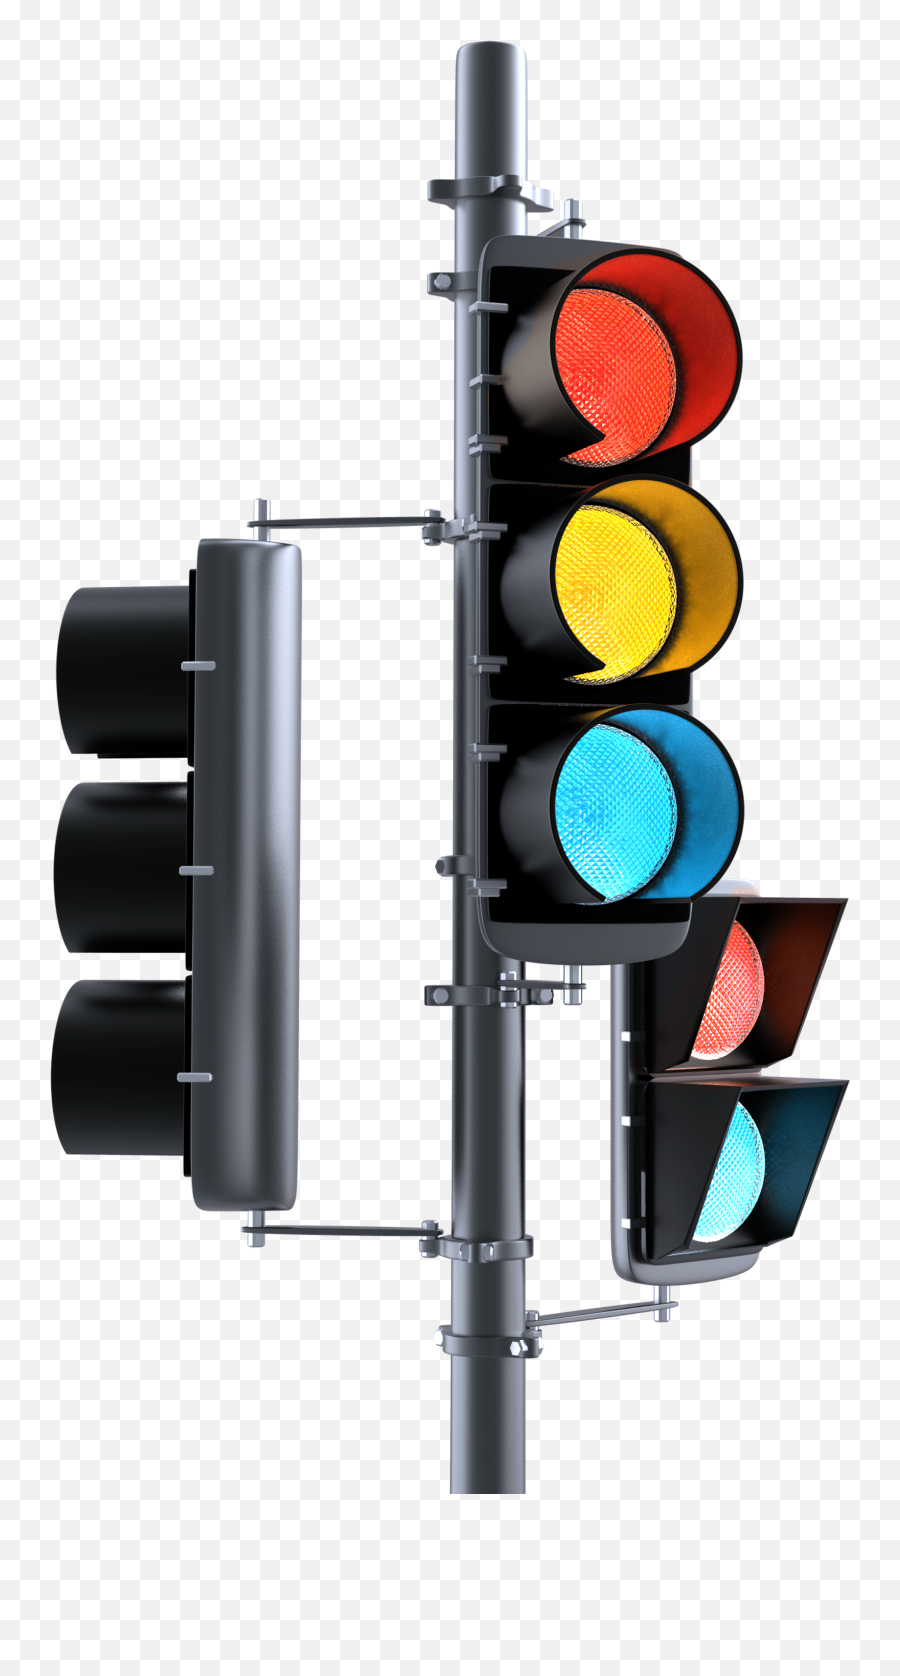 Traffic Light Png Images Transparent Lights Pngs - Traffic Light,Traffic Light Png